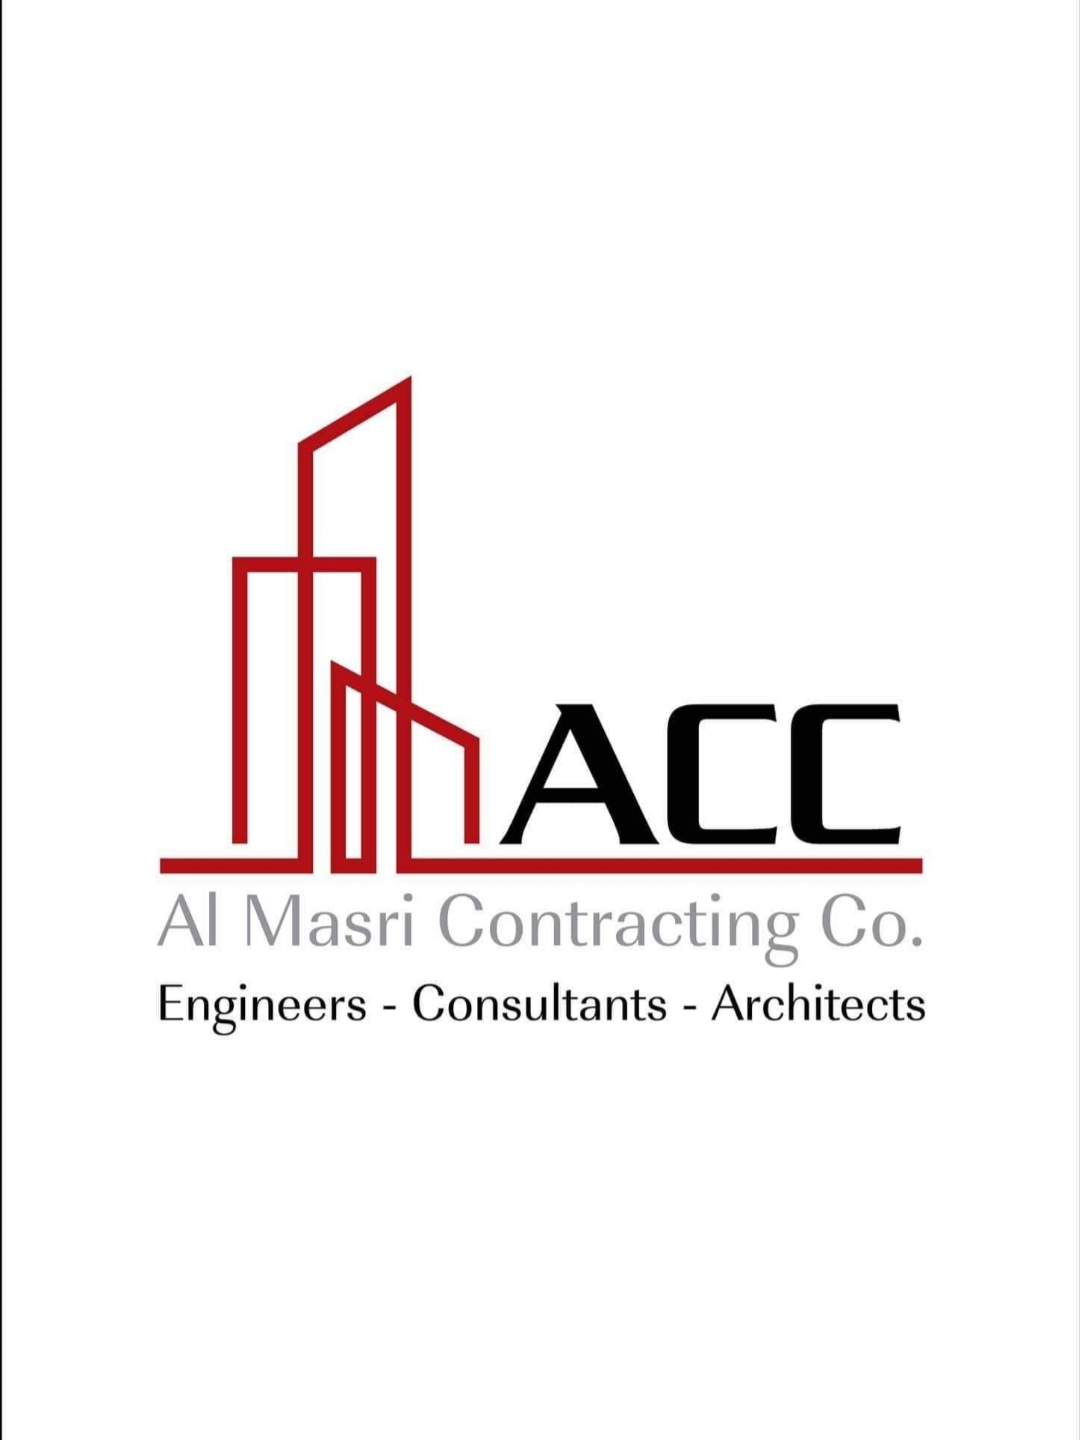 Al Masri Contracting Co. logo